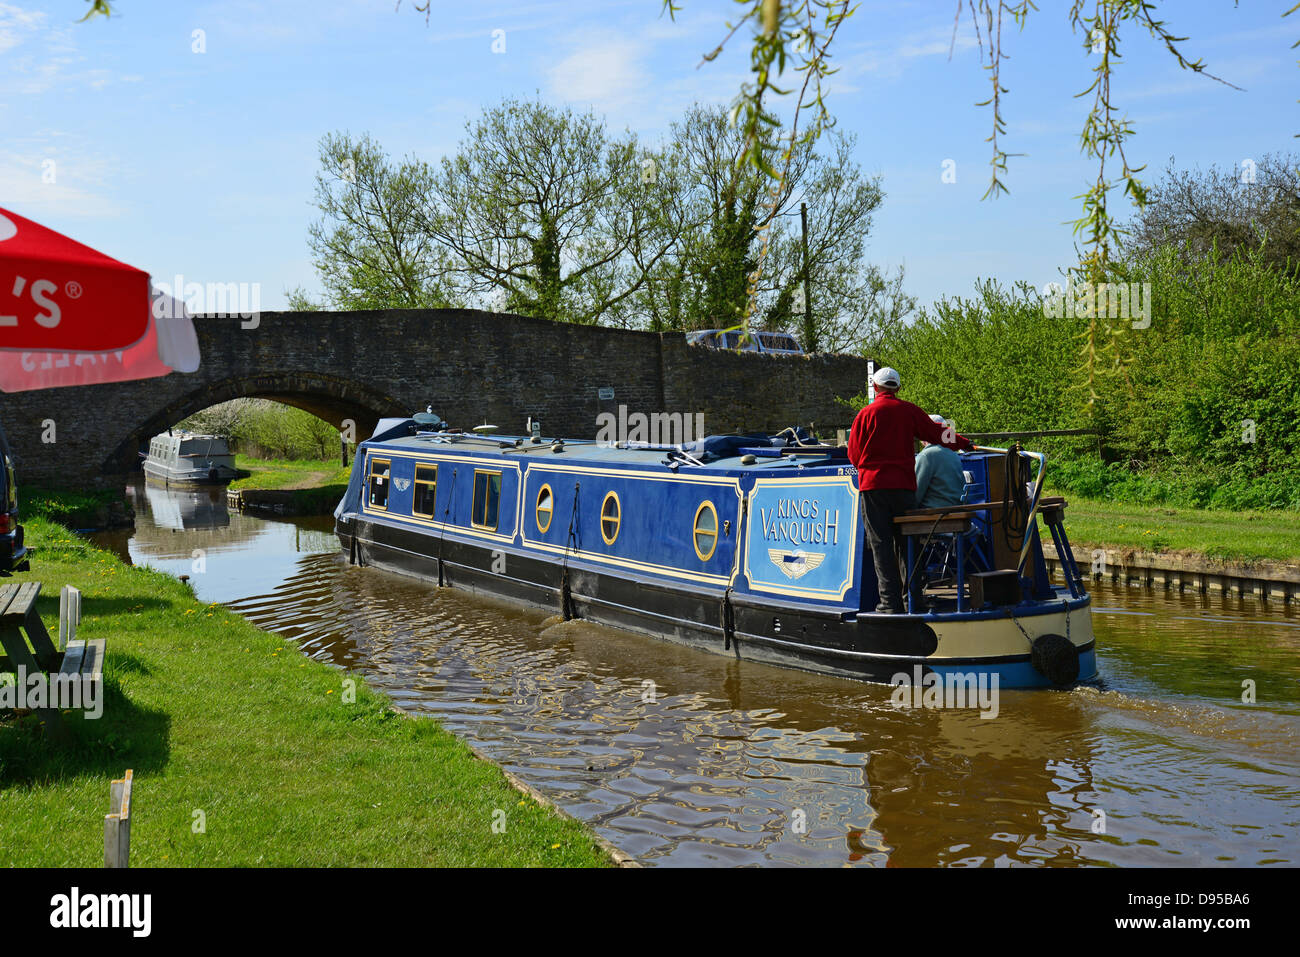 Canal boat sur la rivière Cherwell, c Cottisford, Oxfordshire, Angleterre, Royaume-Uni Banque D'Images